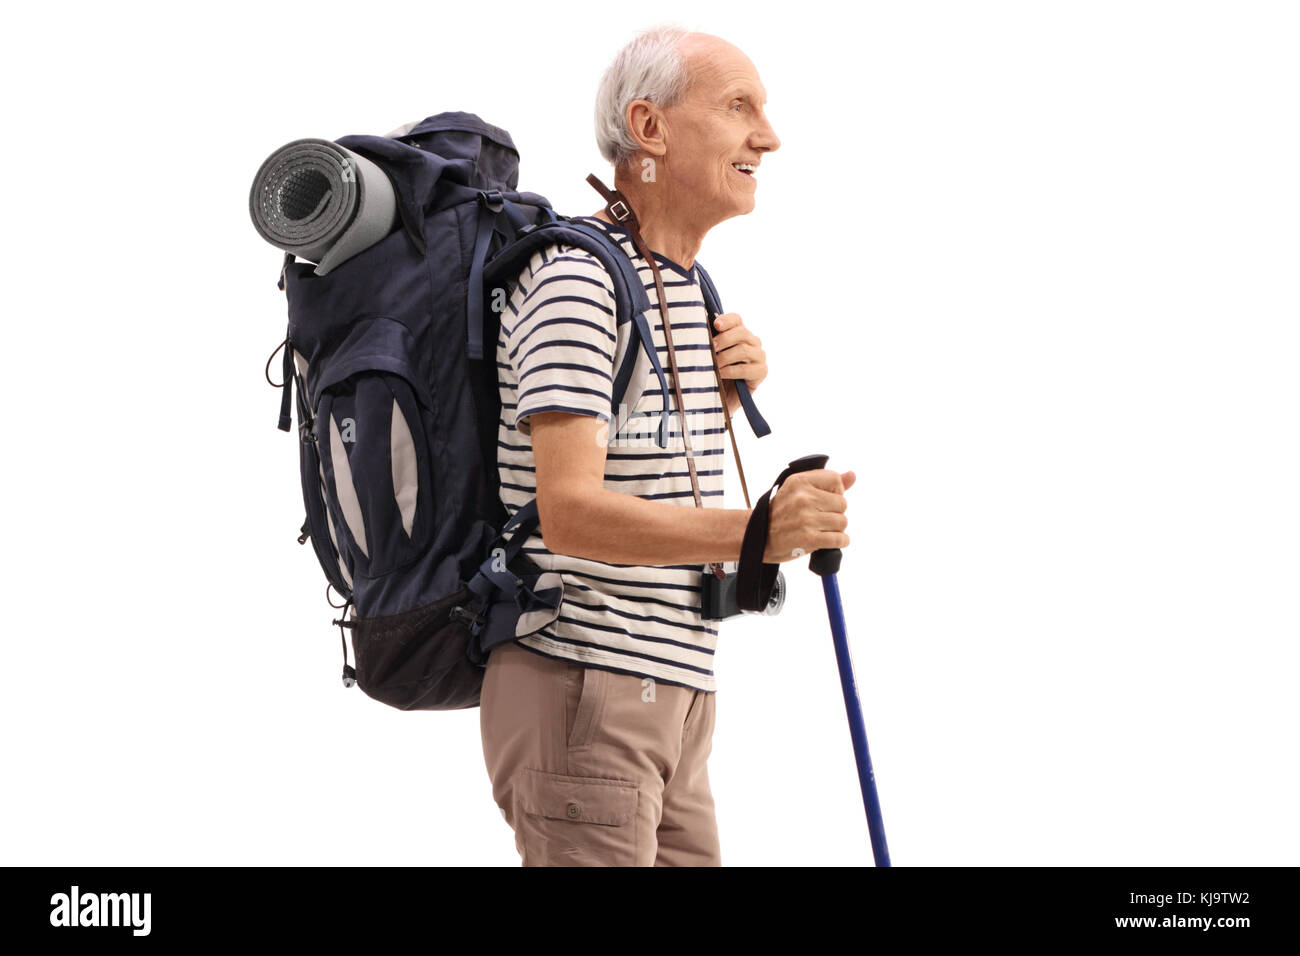 Elderly hiker isolated on white background Stock Photo